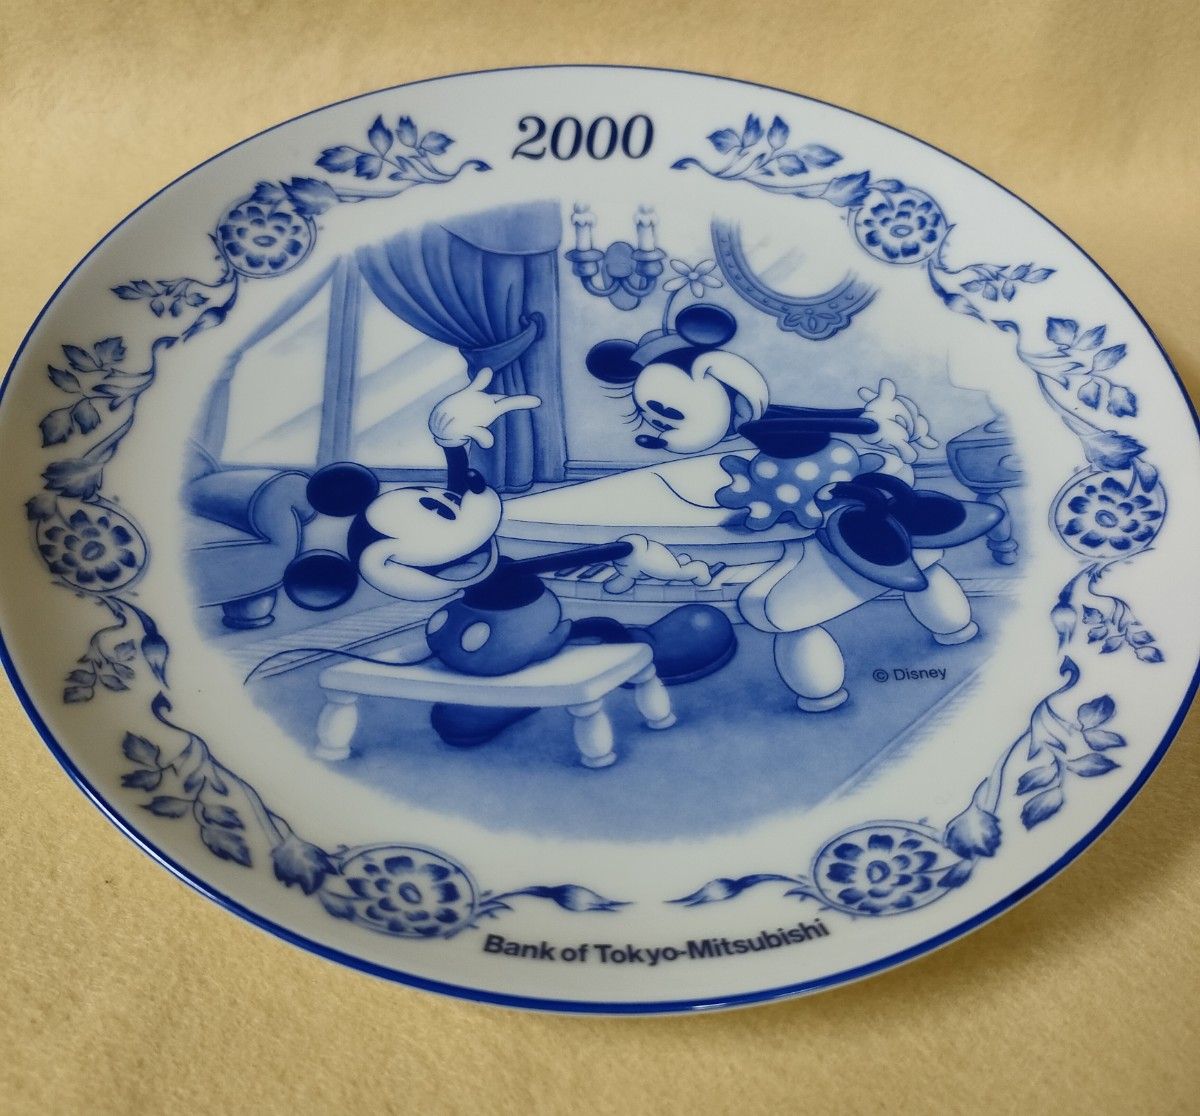 #デズニー イヤープレート2.000#ミッキーマウス#飾皿 ミッキーマウス